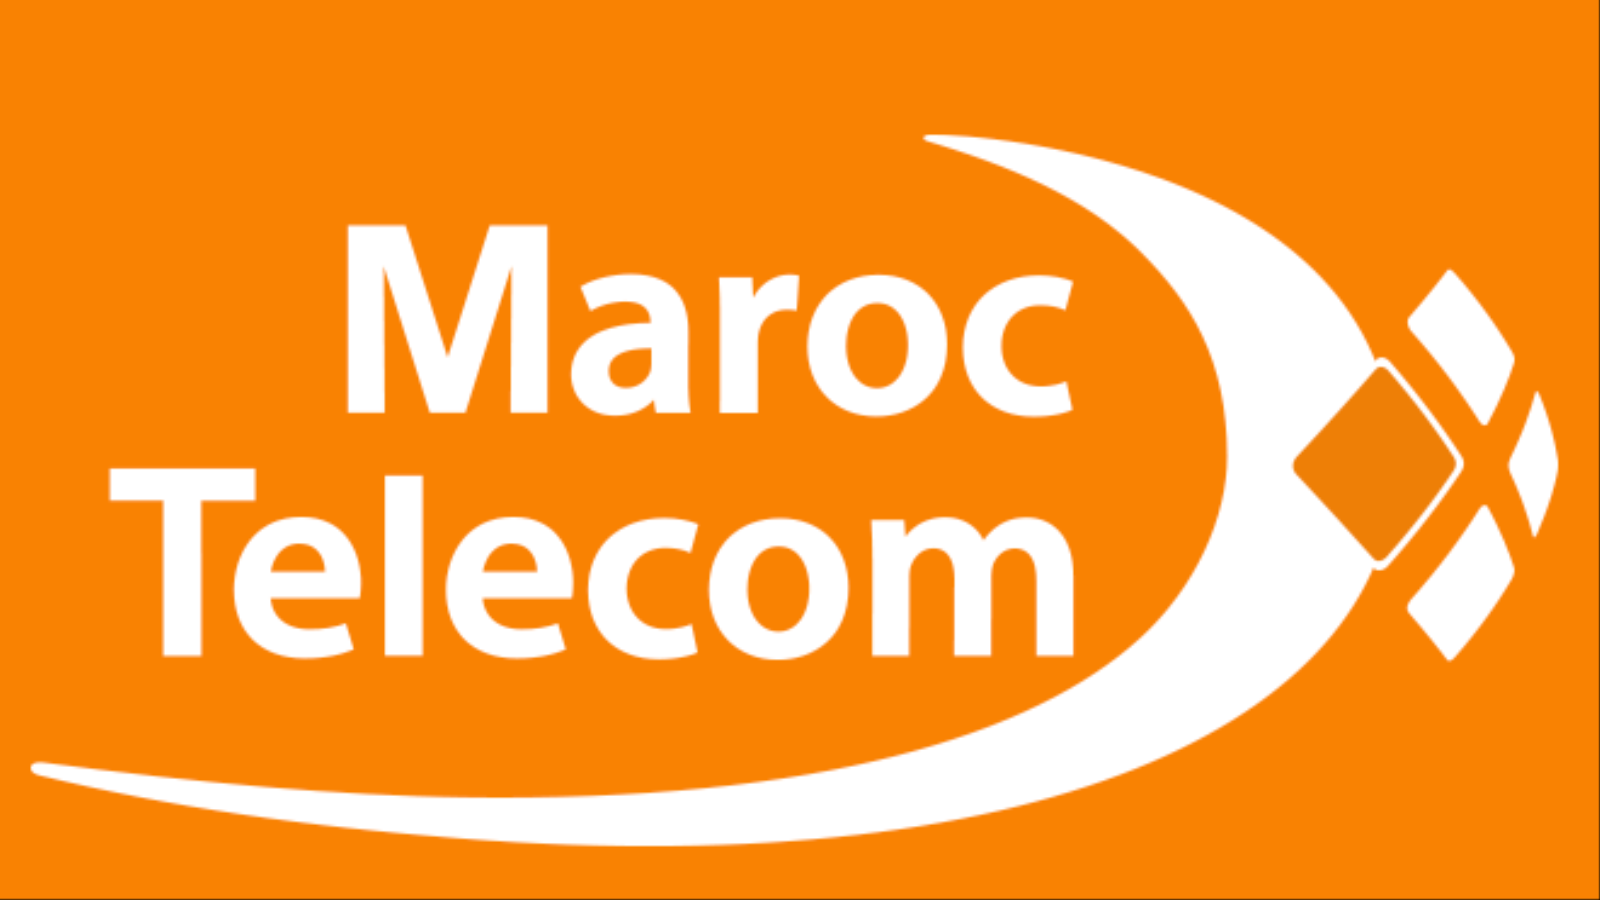 تتواجد شركة الاتصالات ماروك تيليكوم في بنين وتوغو وأفريقيا الوسطى والجابون والنيجر وساحل العاج، بعد شرائها لأفرع شركة أتلانتيك تيليكوم في هذه البلدان من مالكها السابق شركة اتصالات الإماراتية (مواقع التواصل )